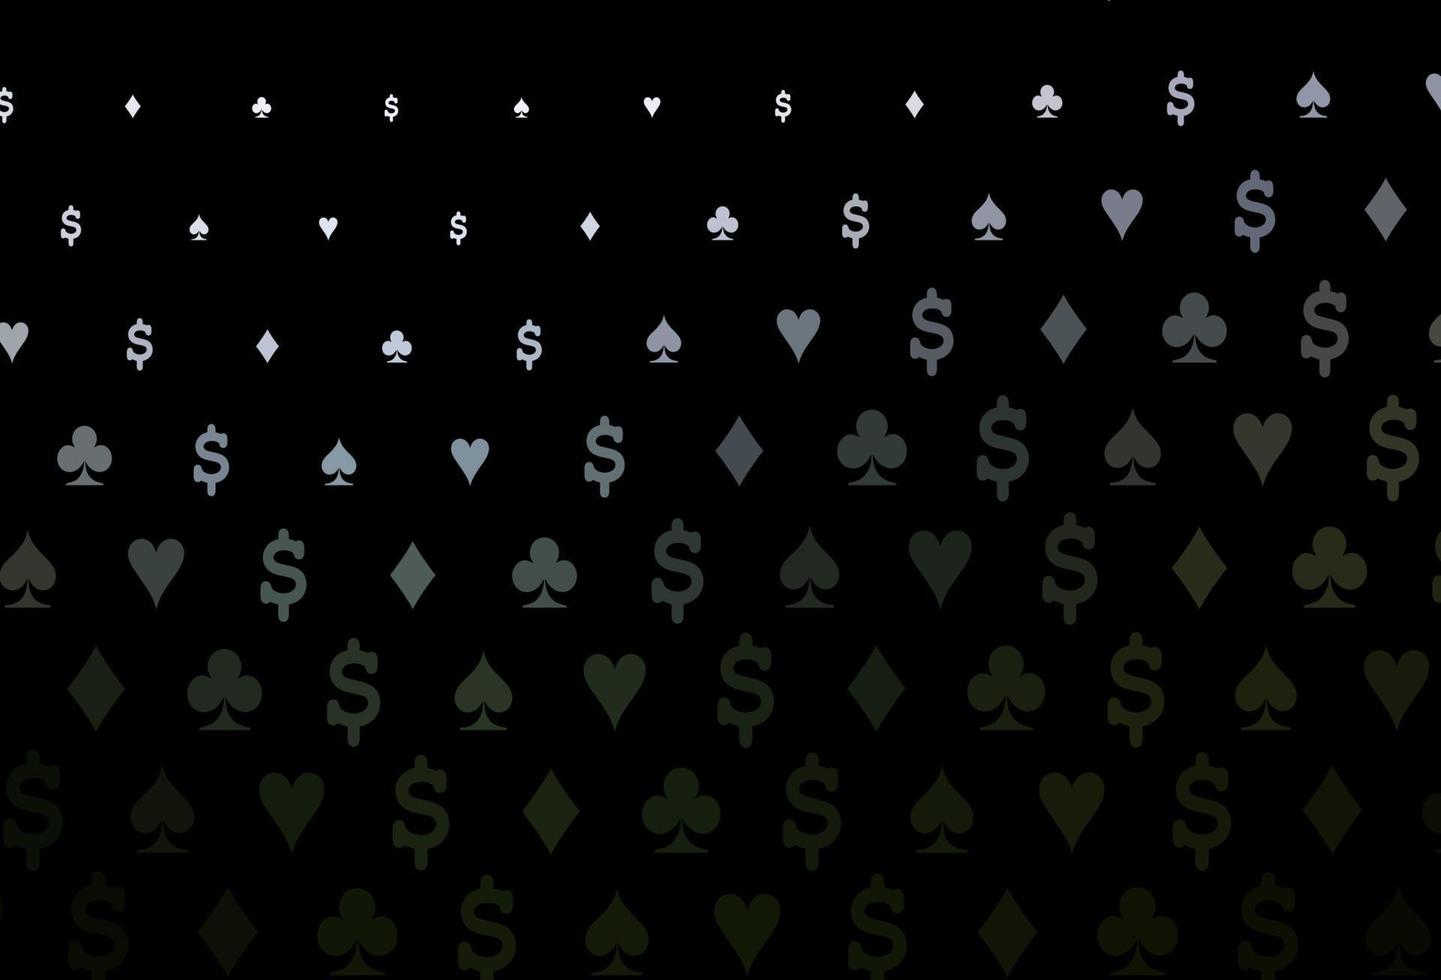 mörkgrön vektor mall med pokersymboler.